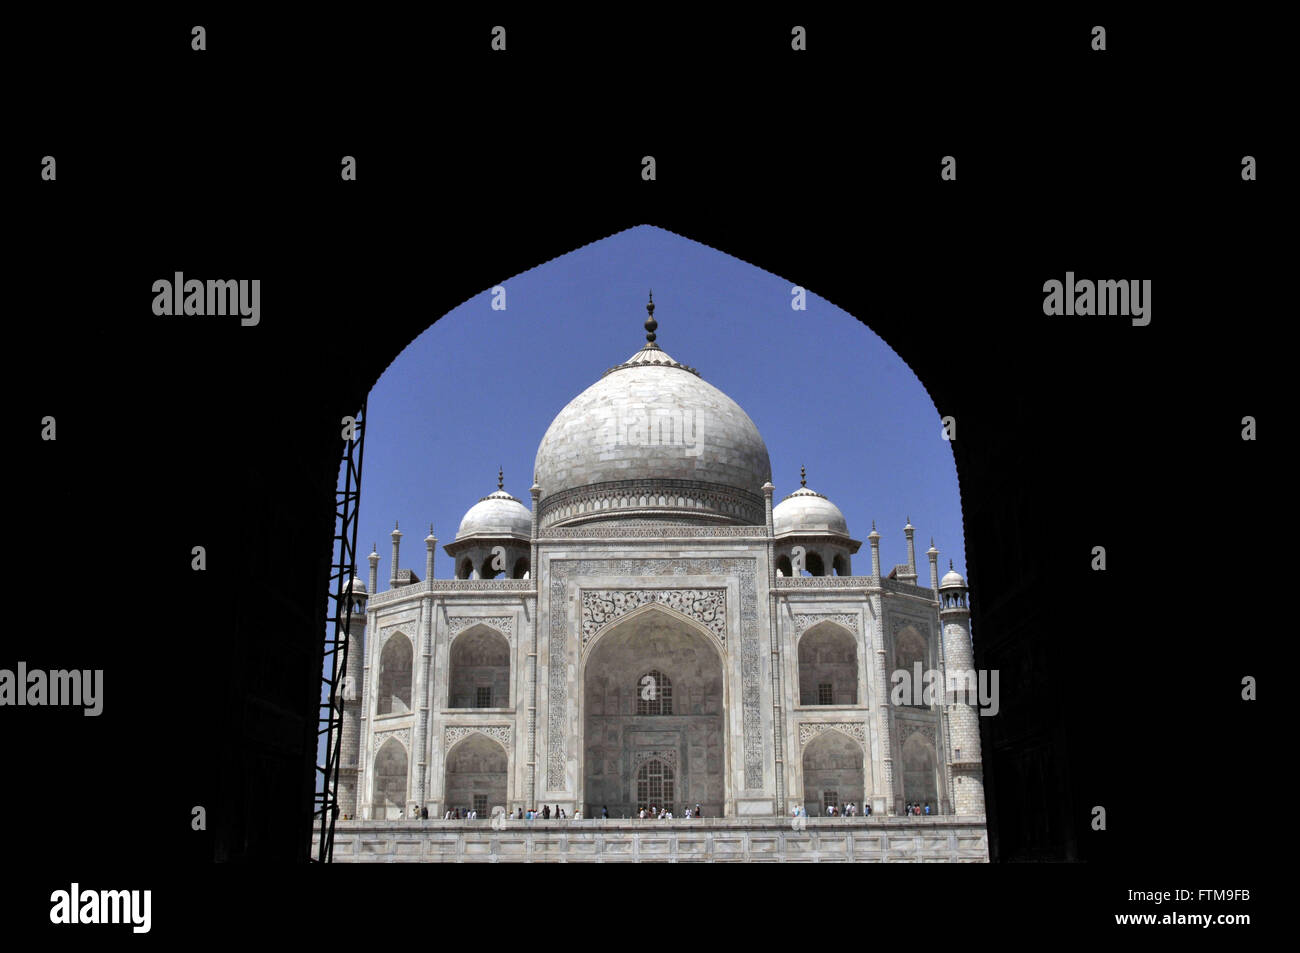 Taj Mahal mausoleo - costruzione del XVII secolo in marmo bianco dall'imperatore Shah Jahan Foto Stock